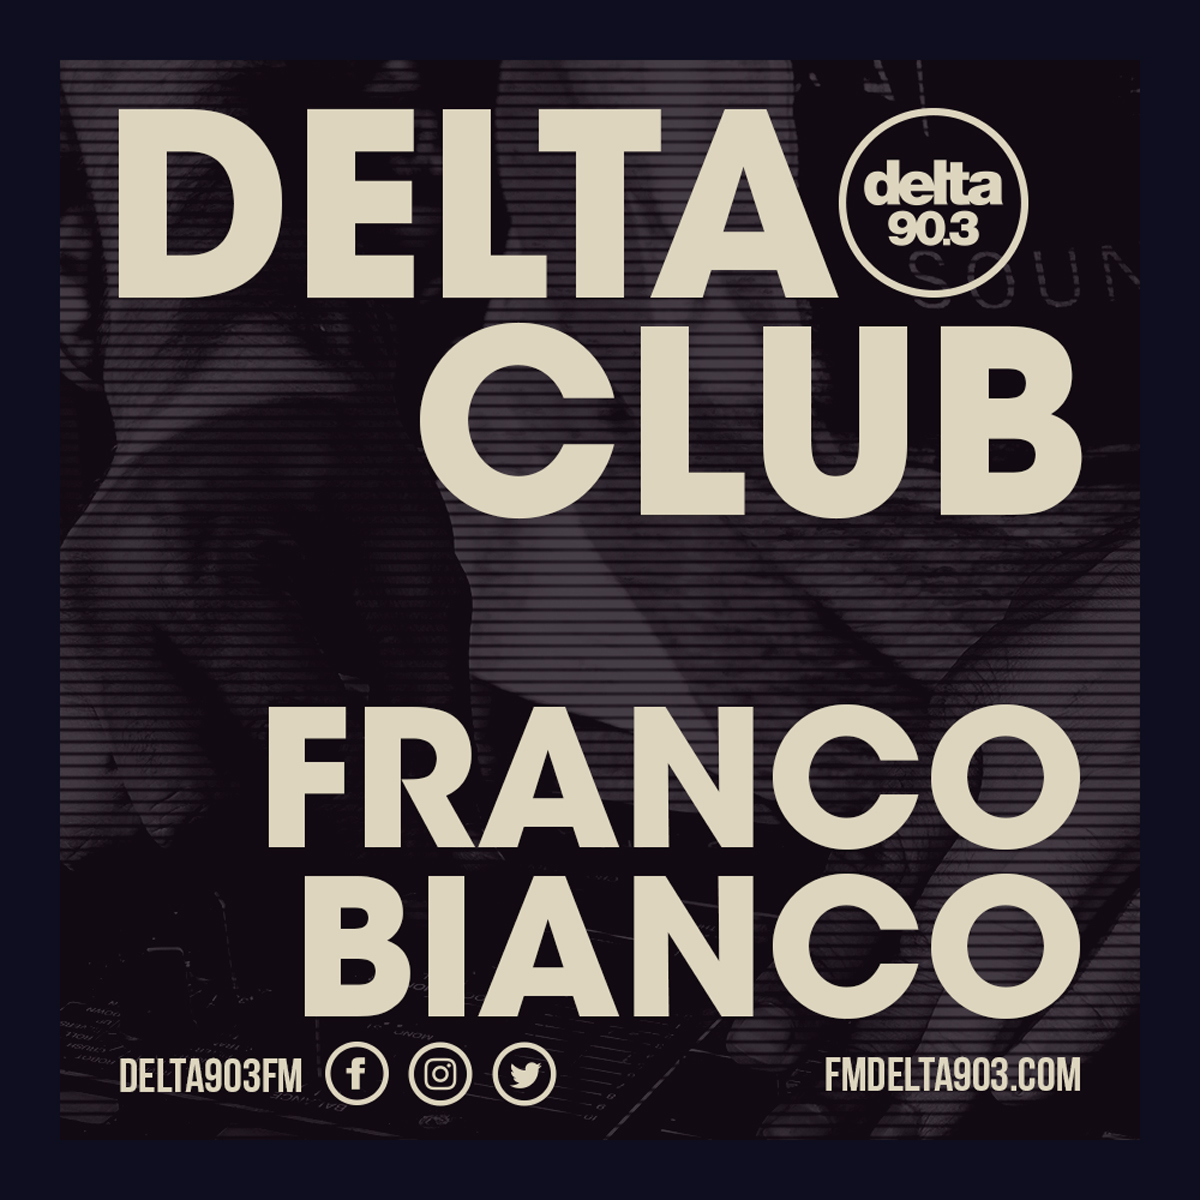 Delta Podcasts - Delta Club presents Franco Bianco (03.07.2018)